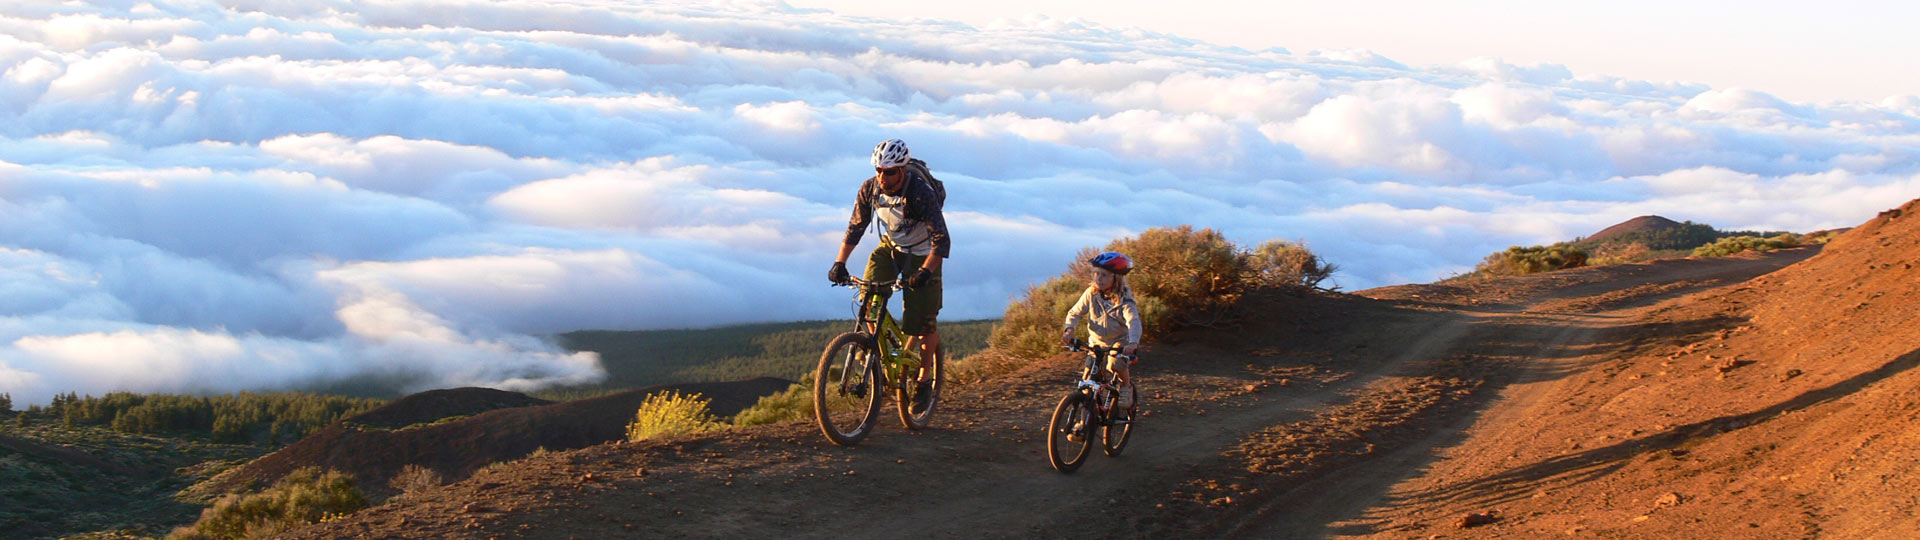 Семья на горных велосипедах на Тенерифе над морем облаков 